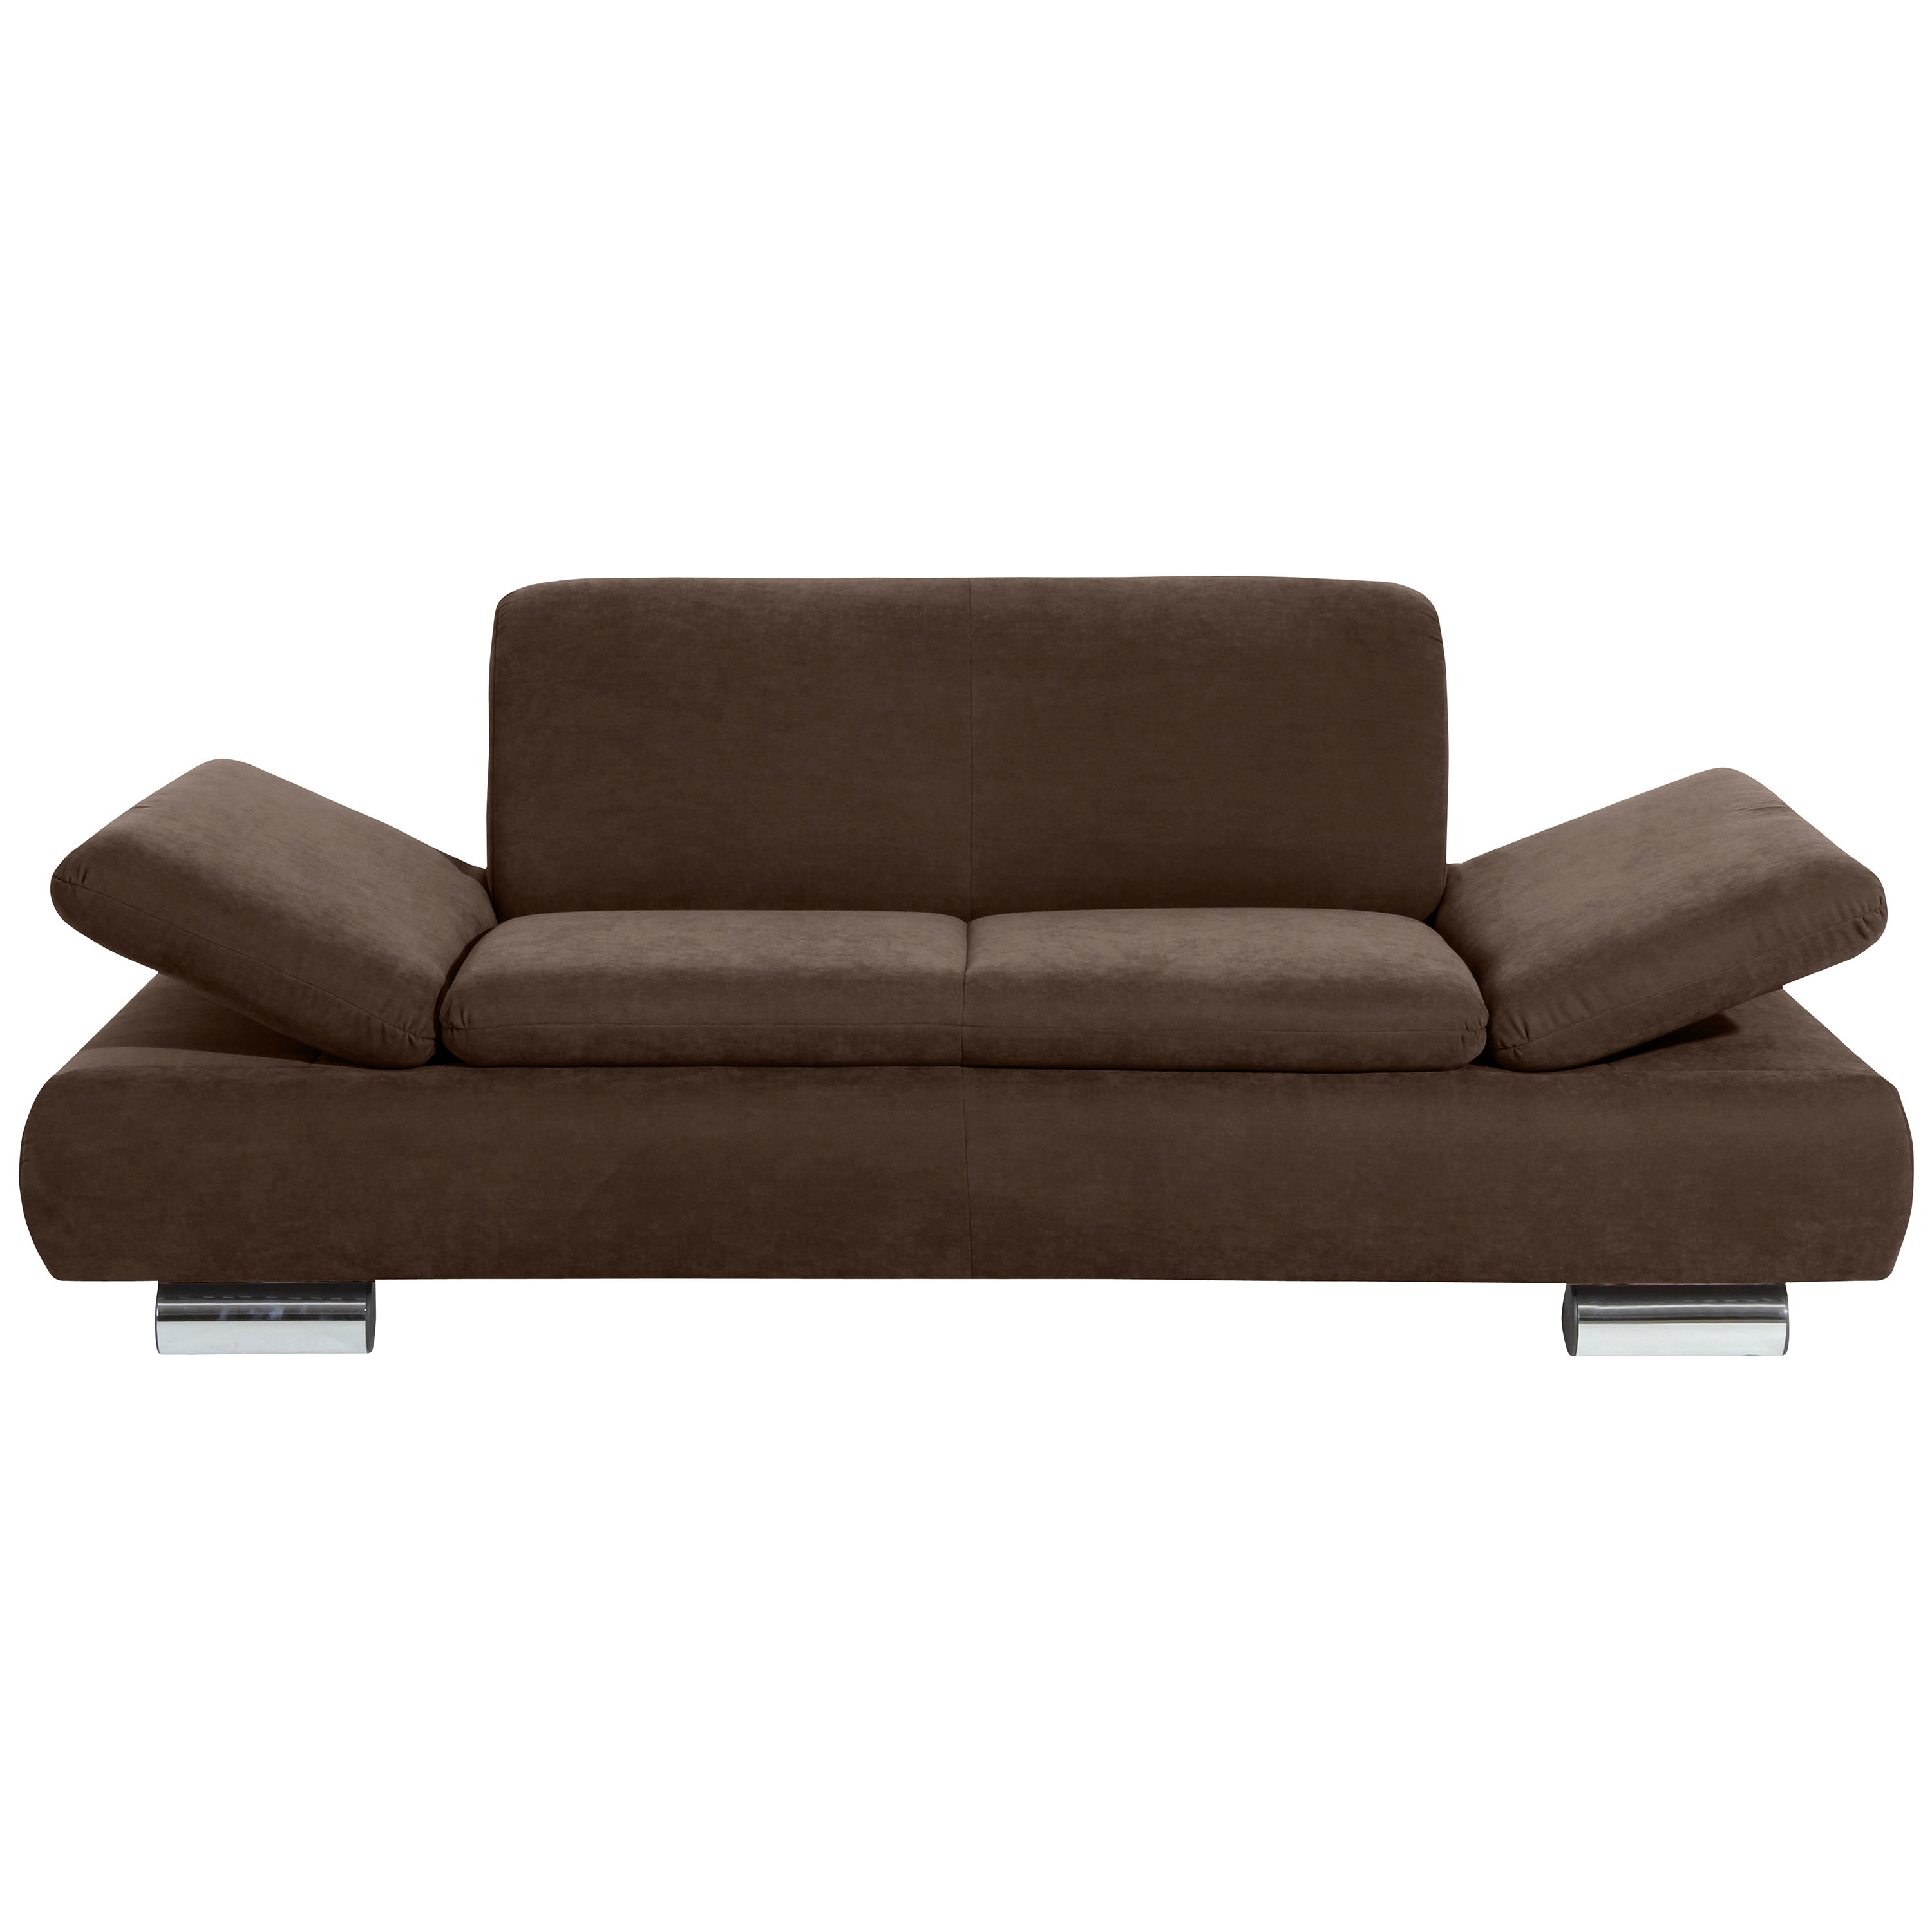 frontansicht von einem 2-sitzer sofa in braun mit hochgeklappten armteilen und verchromten metallfüssen